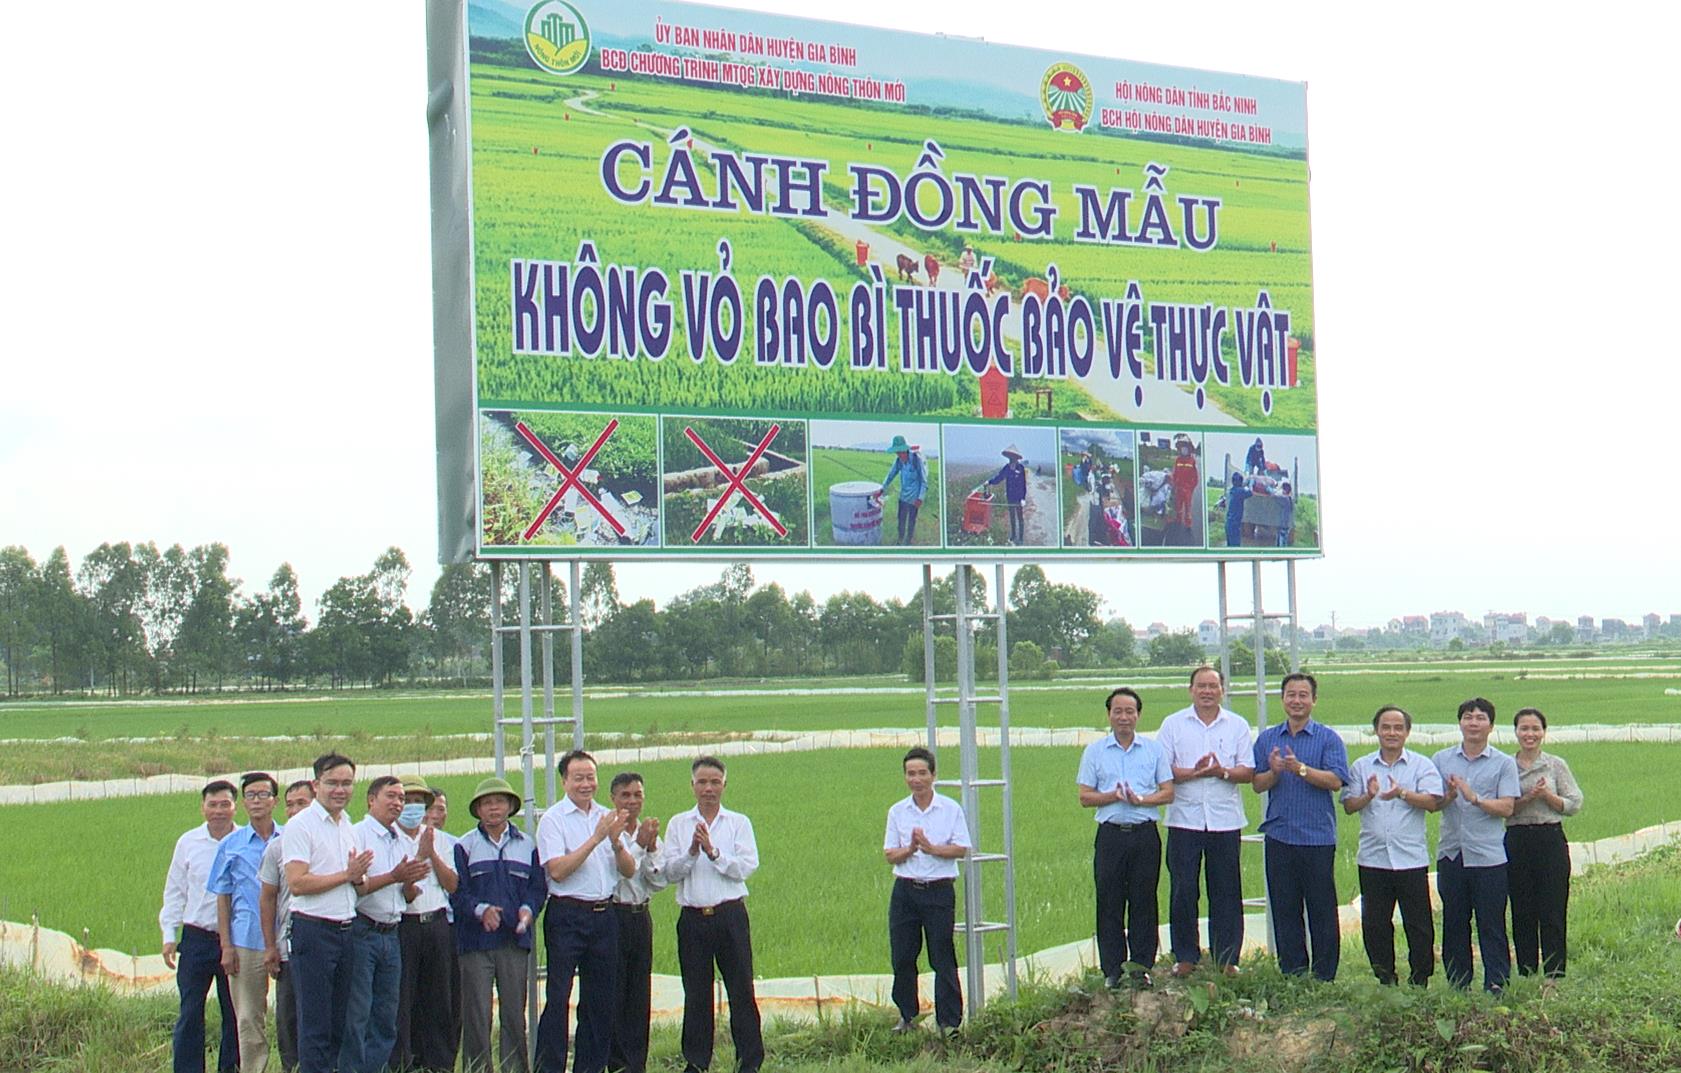 Bắc Ninh: Nông dân Gia Bình bảo vệ môi trường, xây dựng cánh đồng mẫu không vỏ bao bì thuốc BVTV - Ảnh 1.